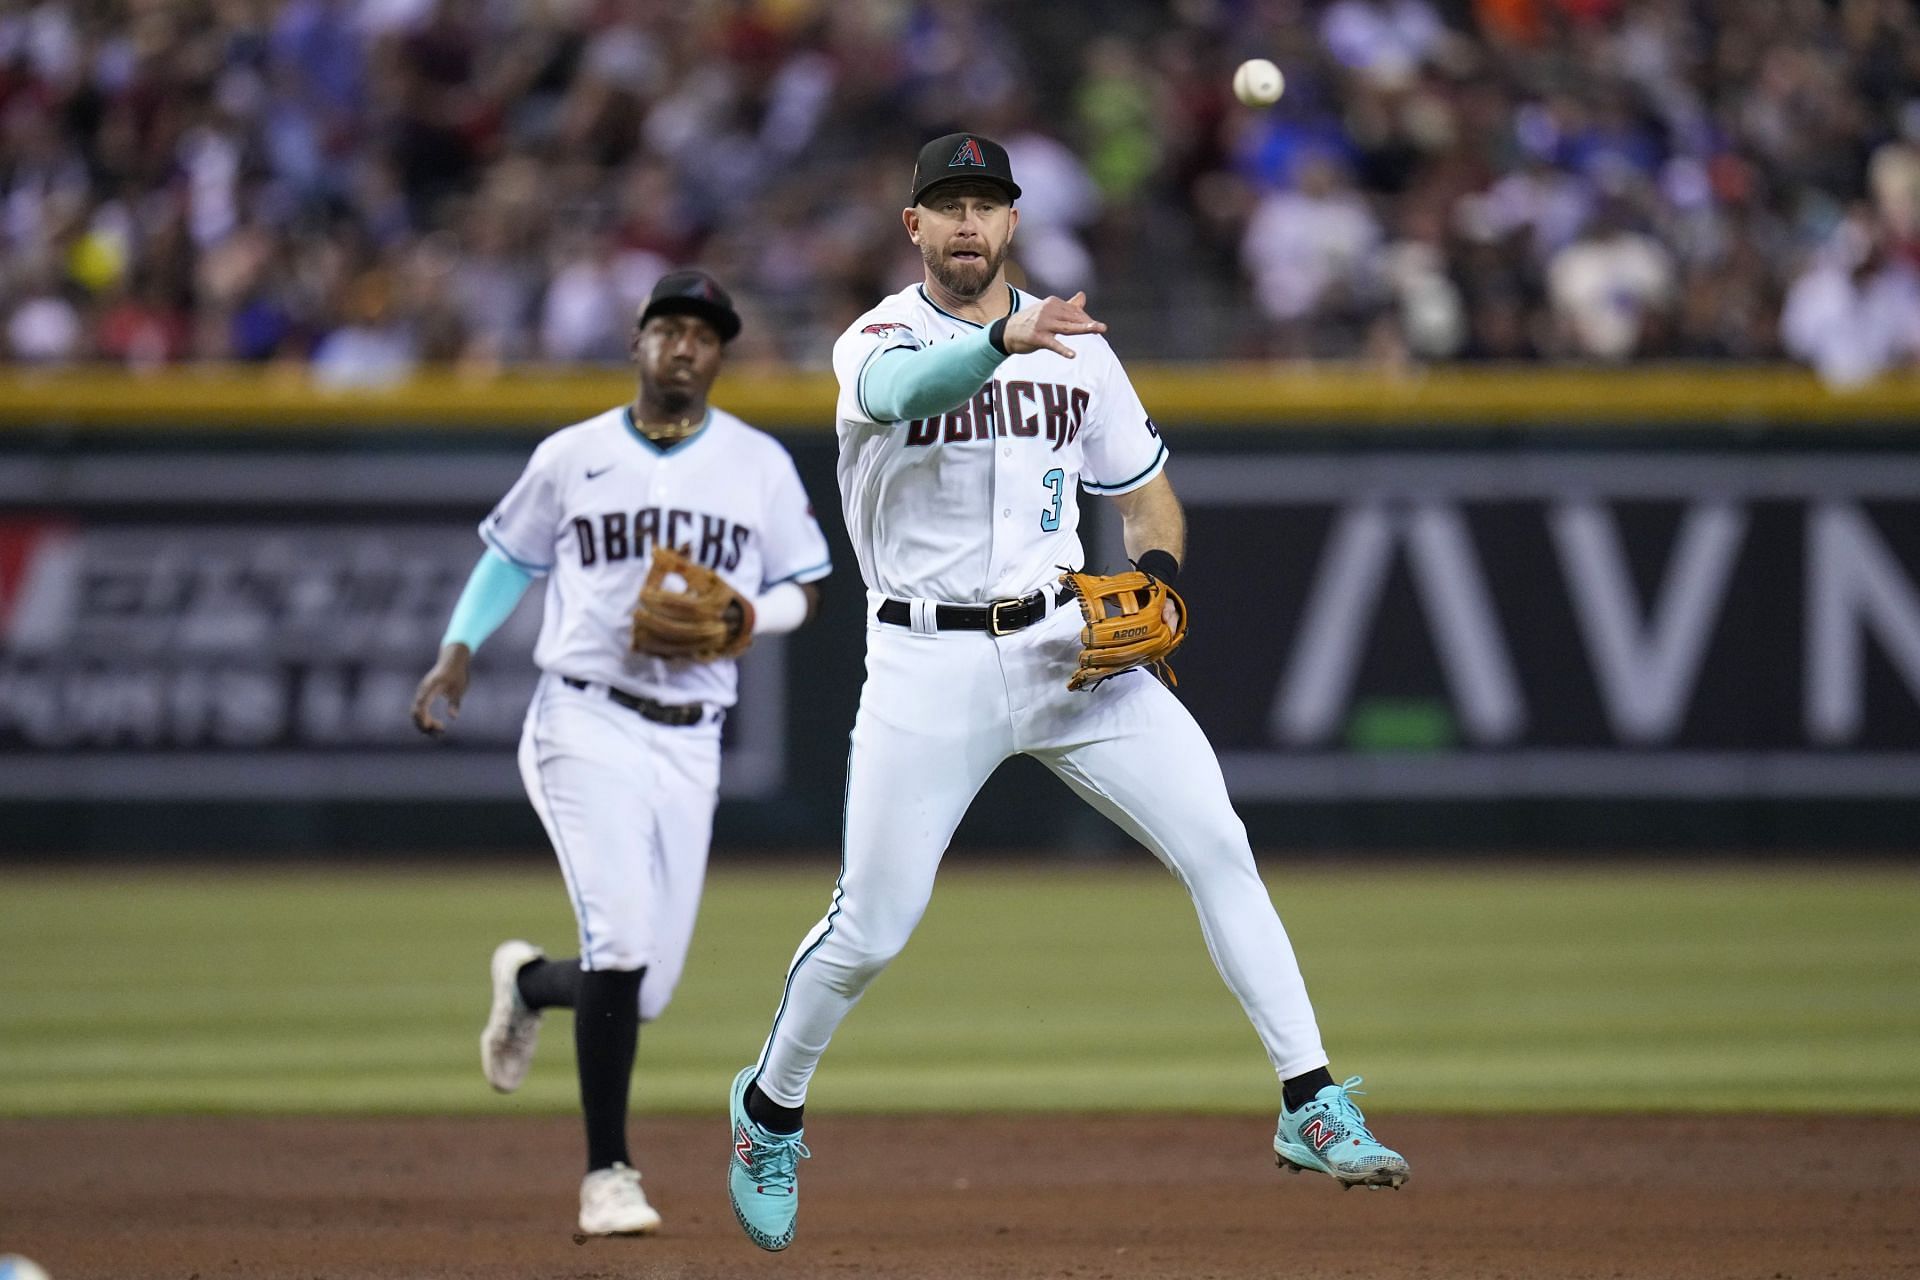 Arizona Diamondbacks third baseman Evan Longoria throws to first base againwst the Houston Astros in Phoenix